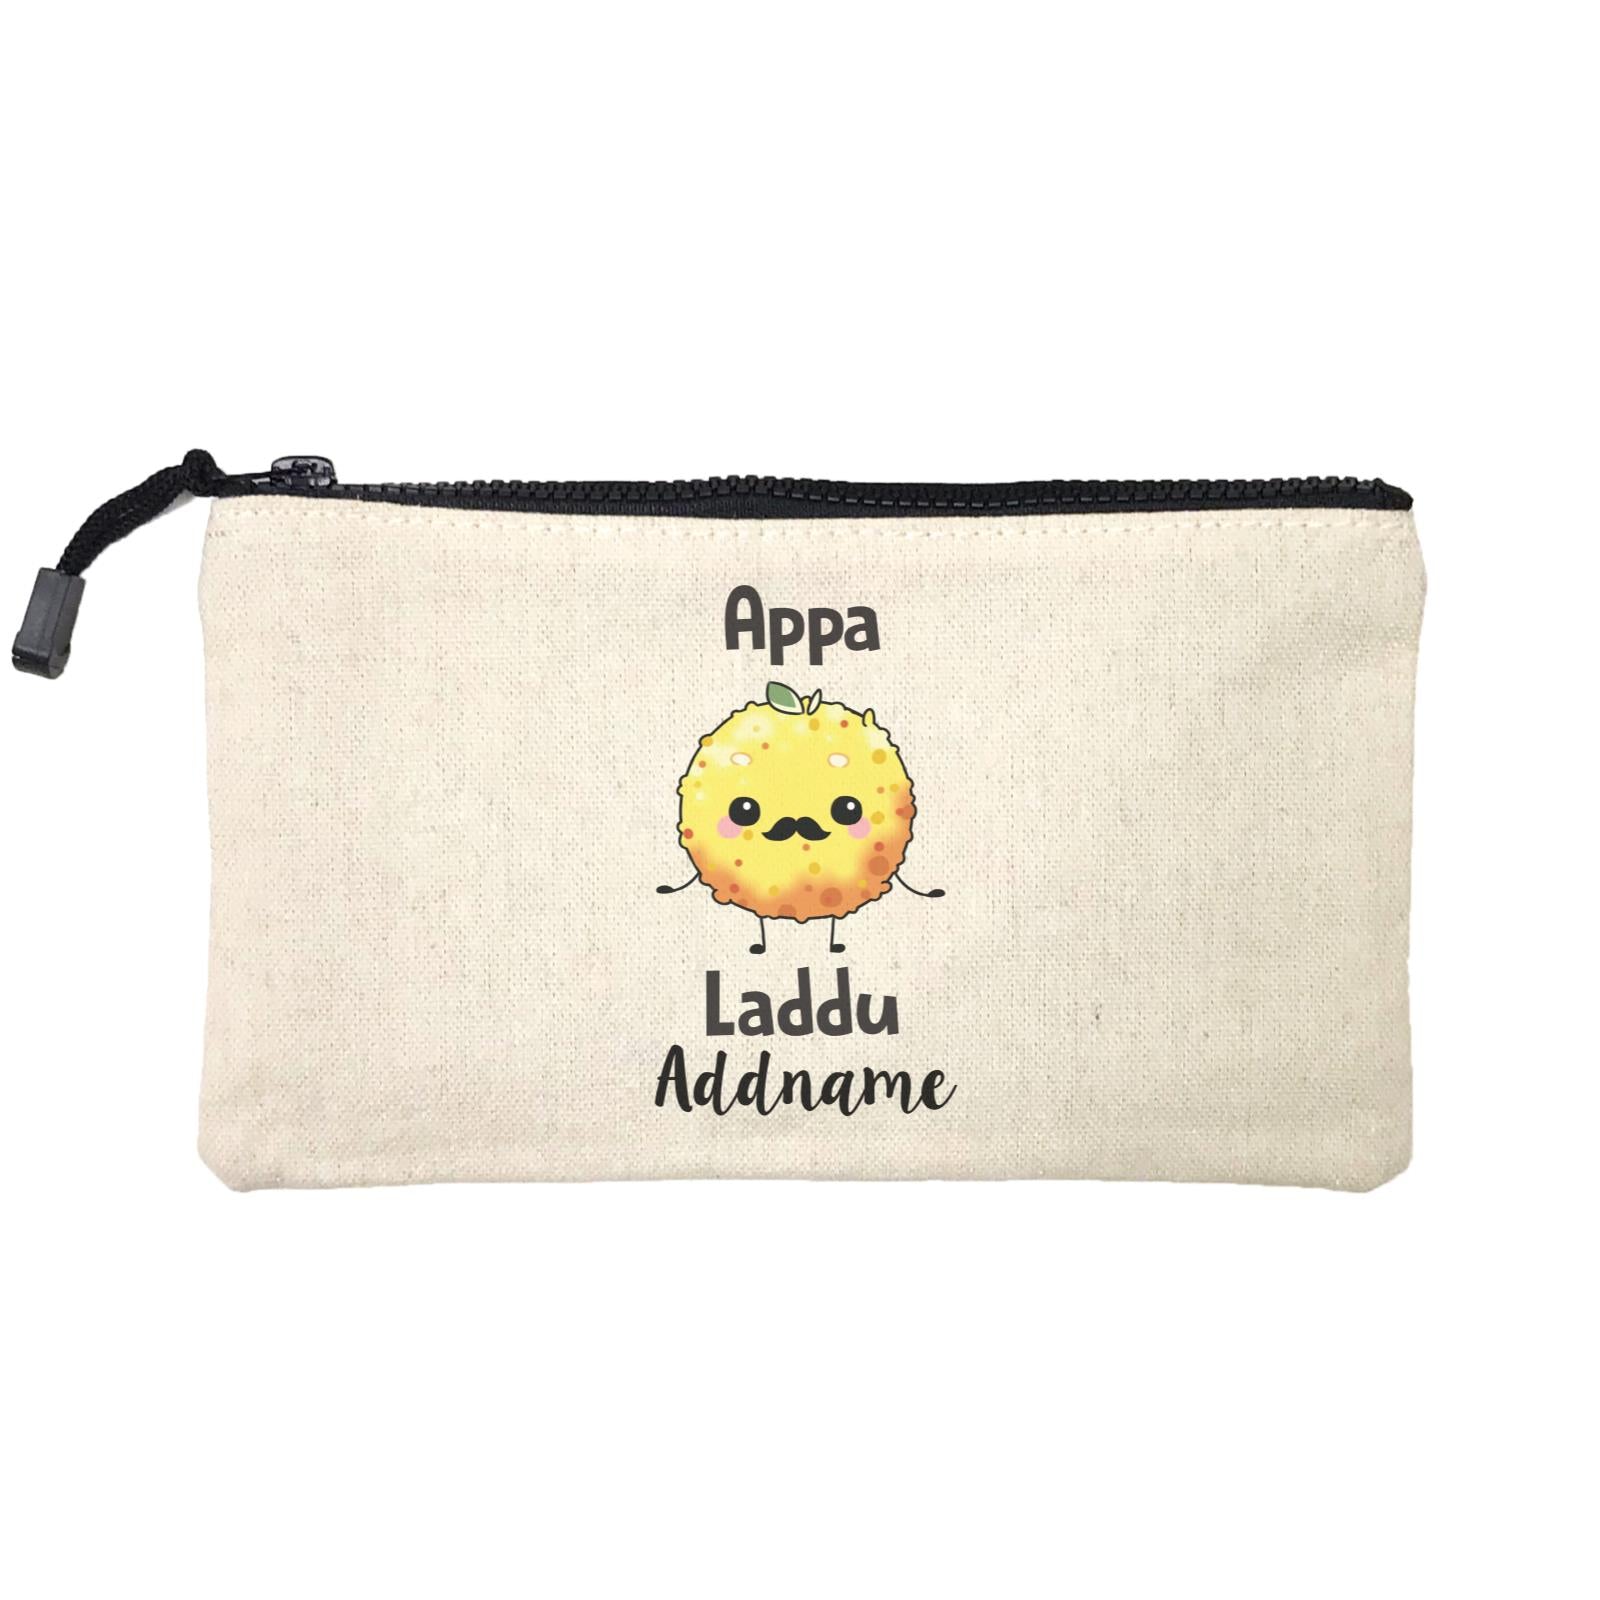 Deepavali Cute Appa Laddu Addname Mini Accessories Stationery Pouch